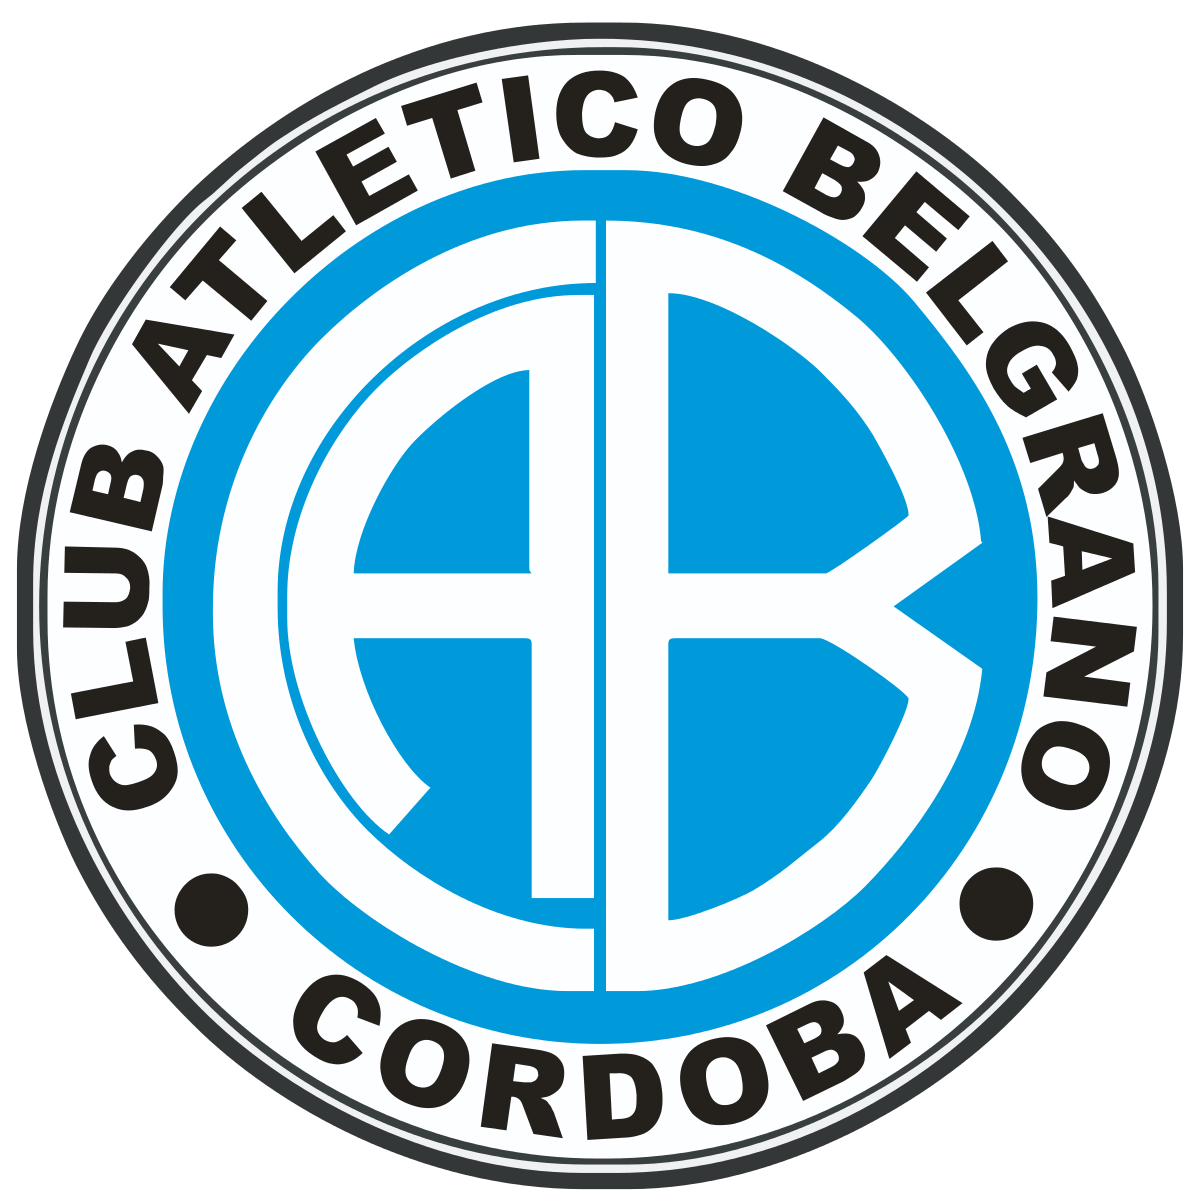 Image result for Belgrano de cordoba logo